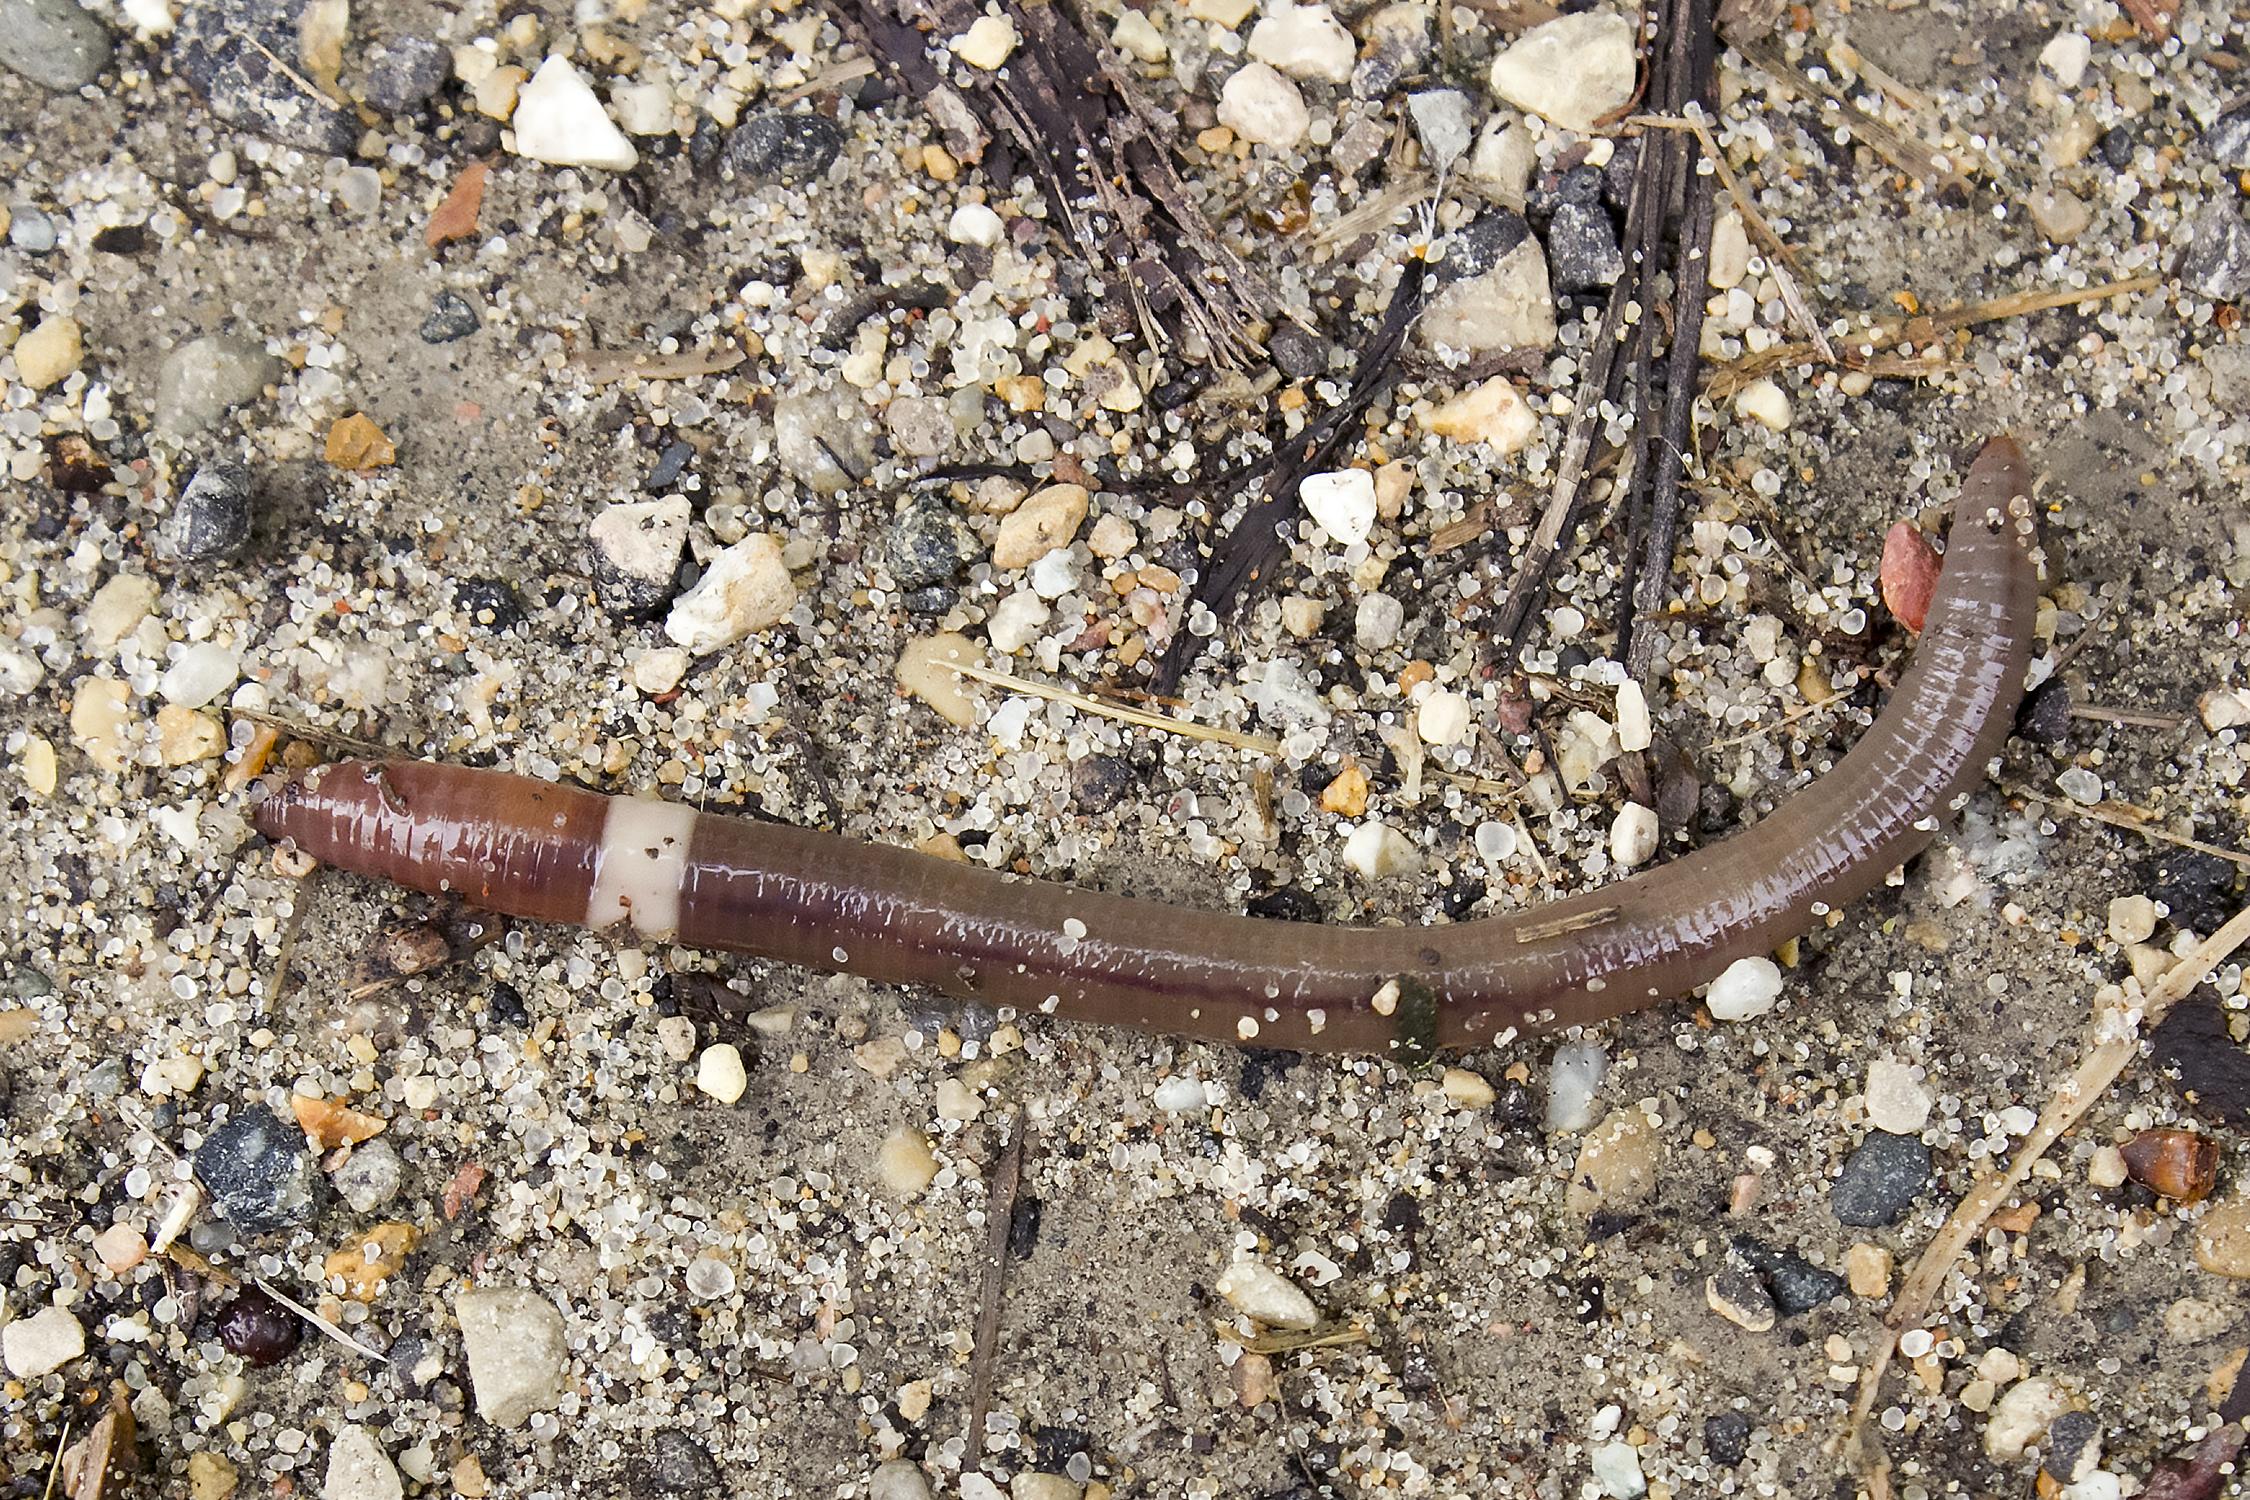 an adult invasive earthworm